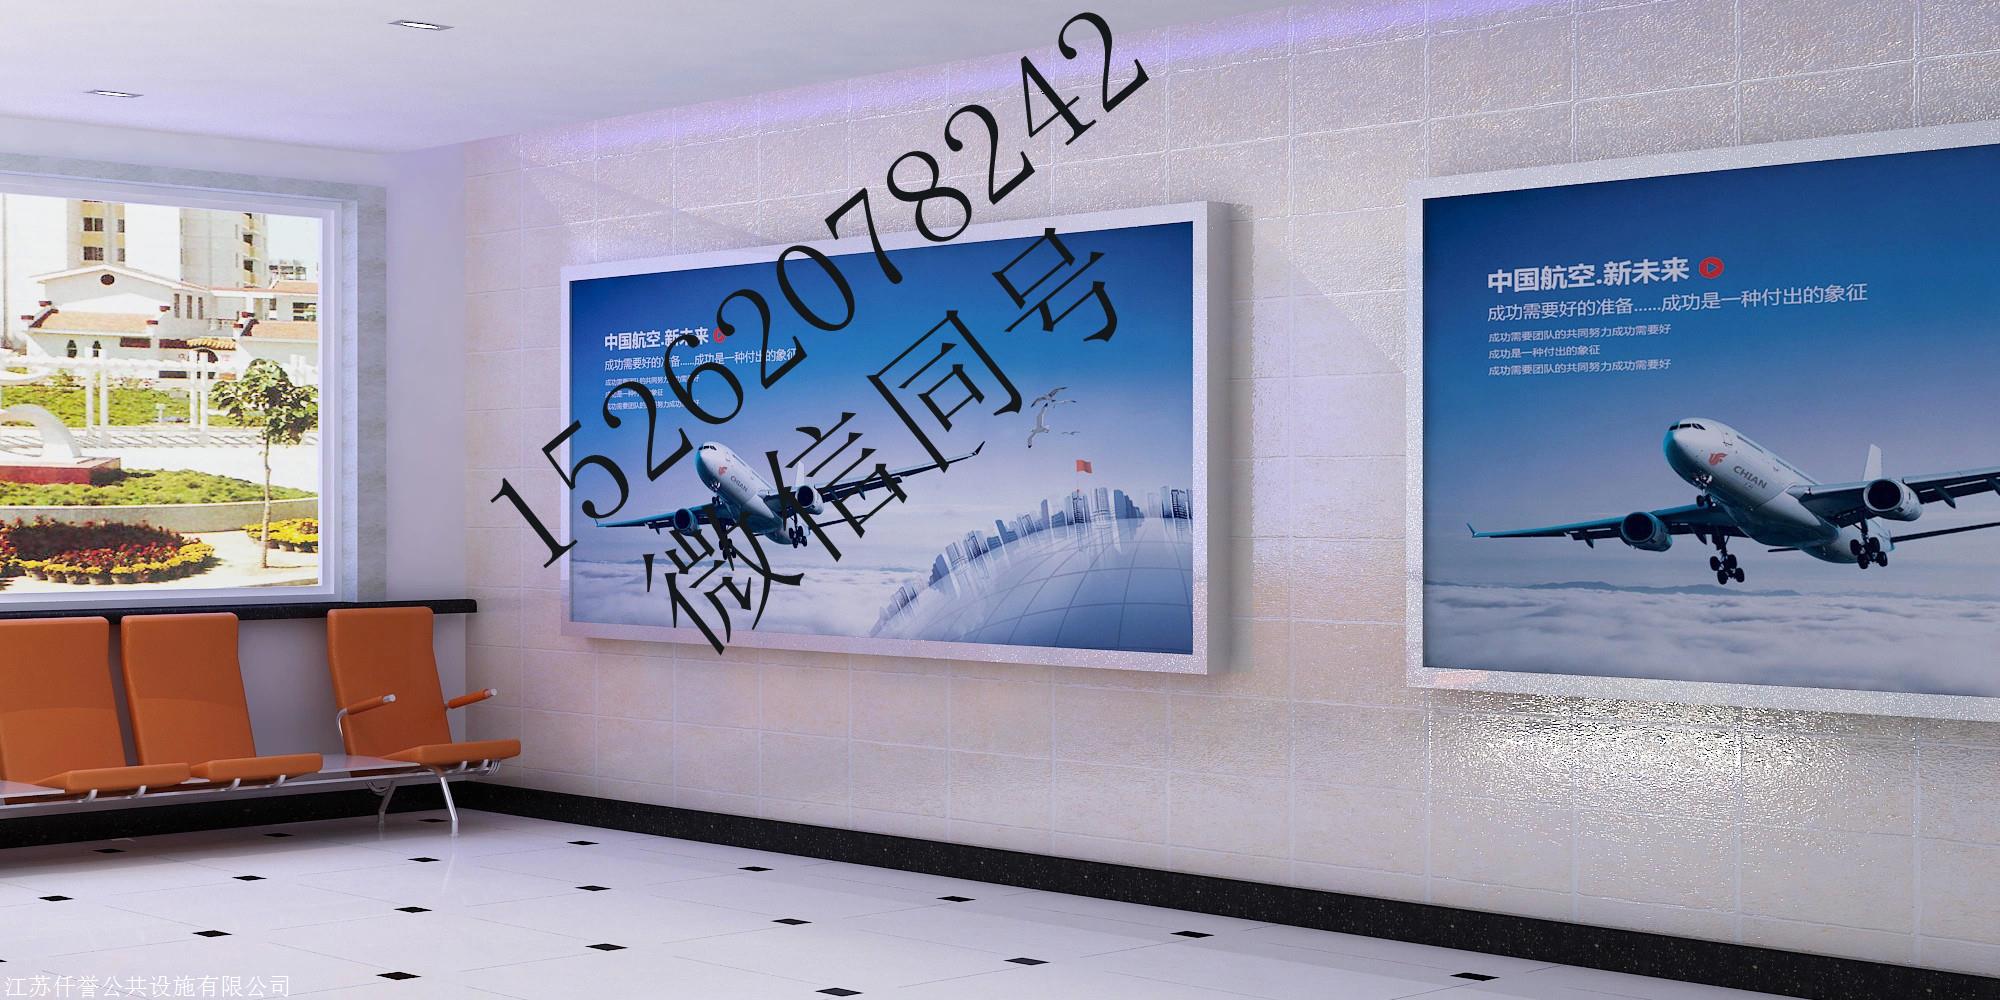 贵州壁挂宣传栏 安顺室内宣传栏 遵义移动宣传栏 贵阳壁挂橱窗 凯里